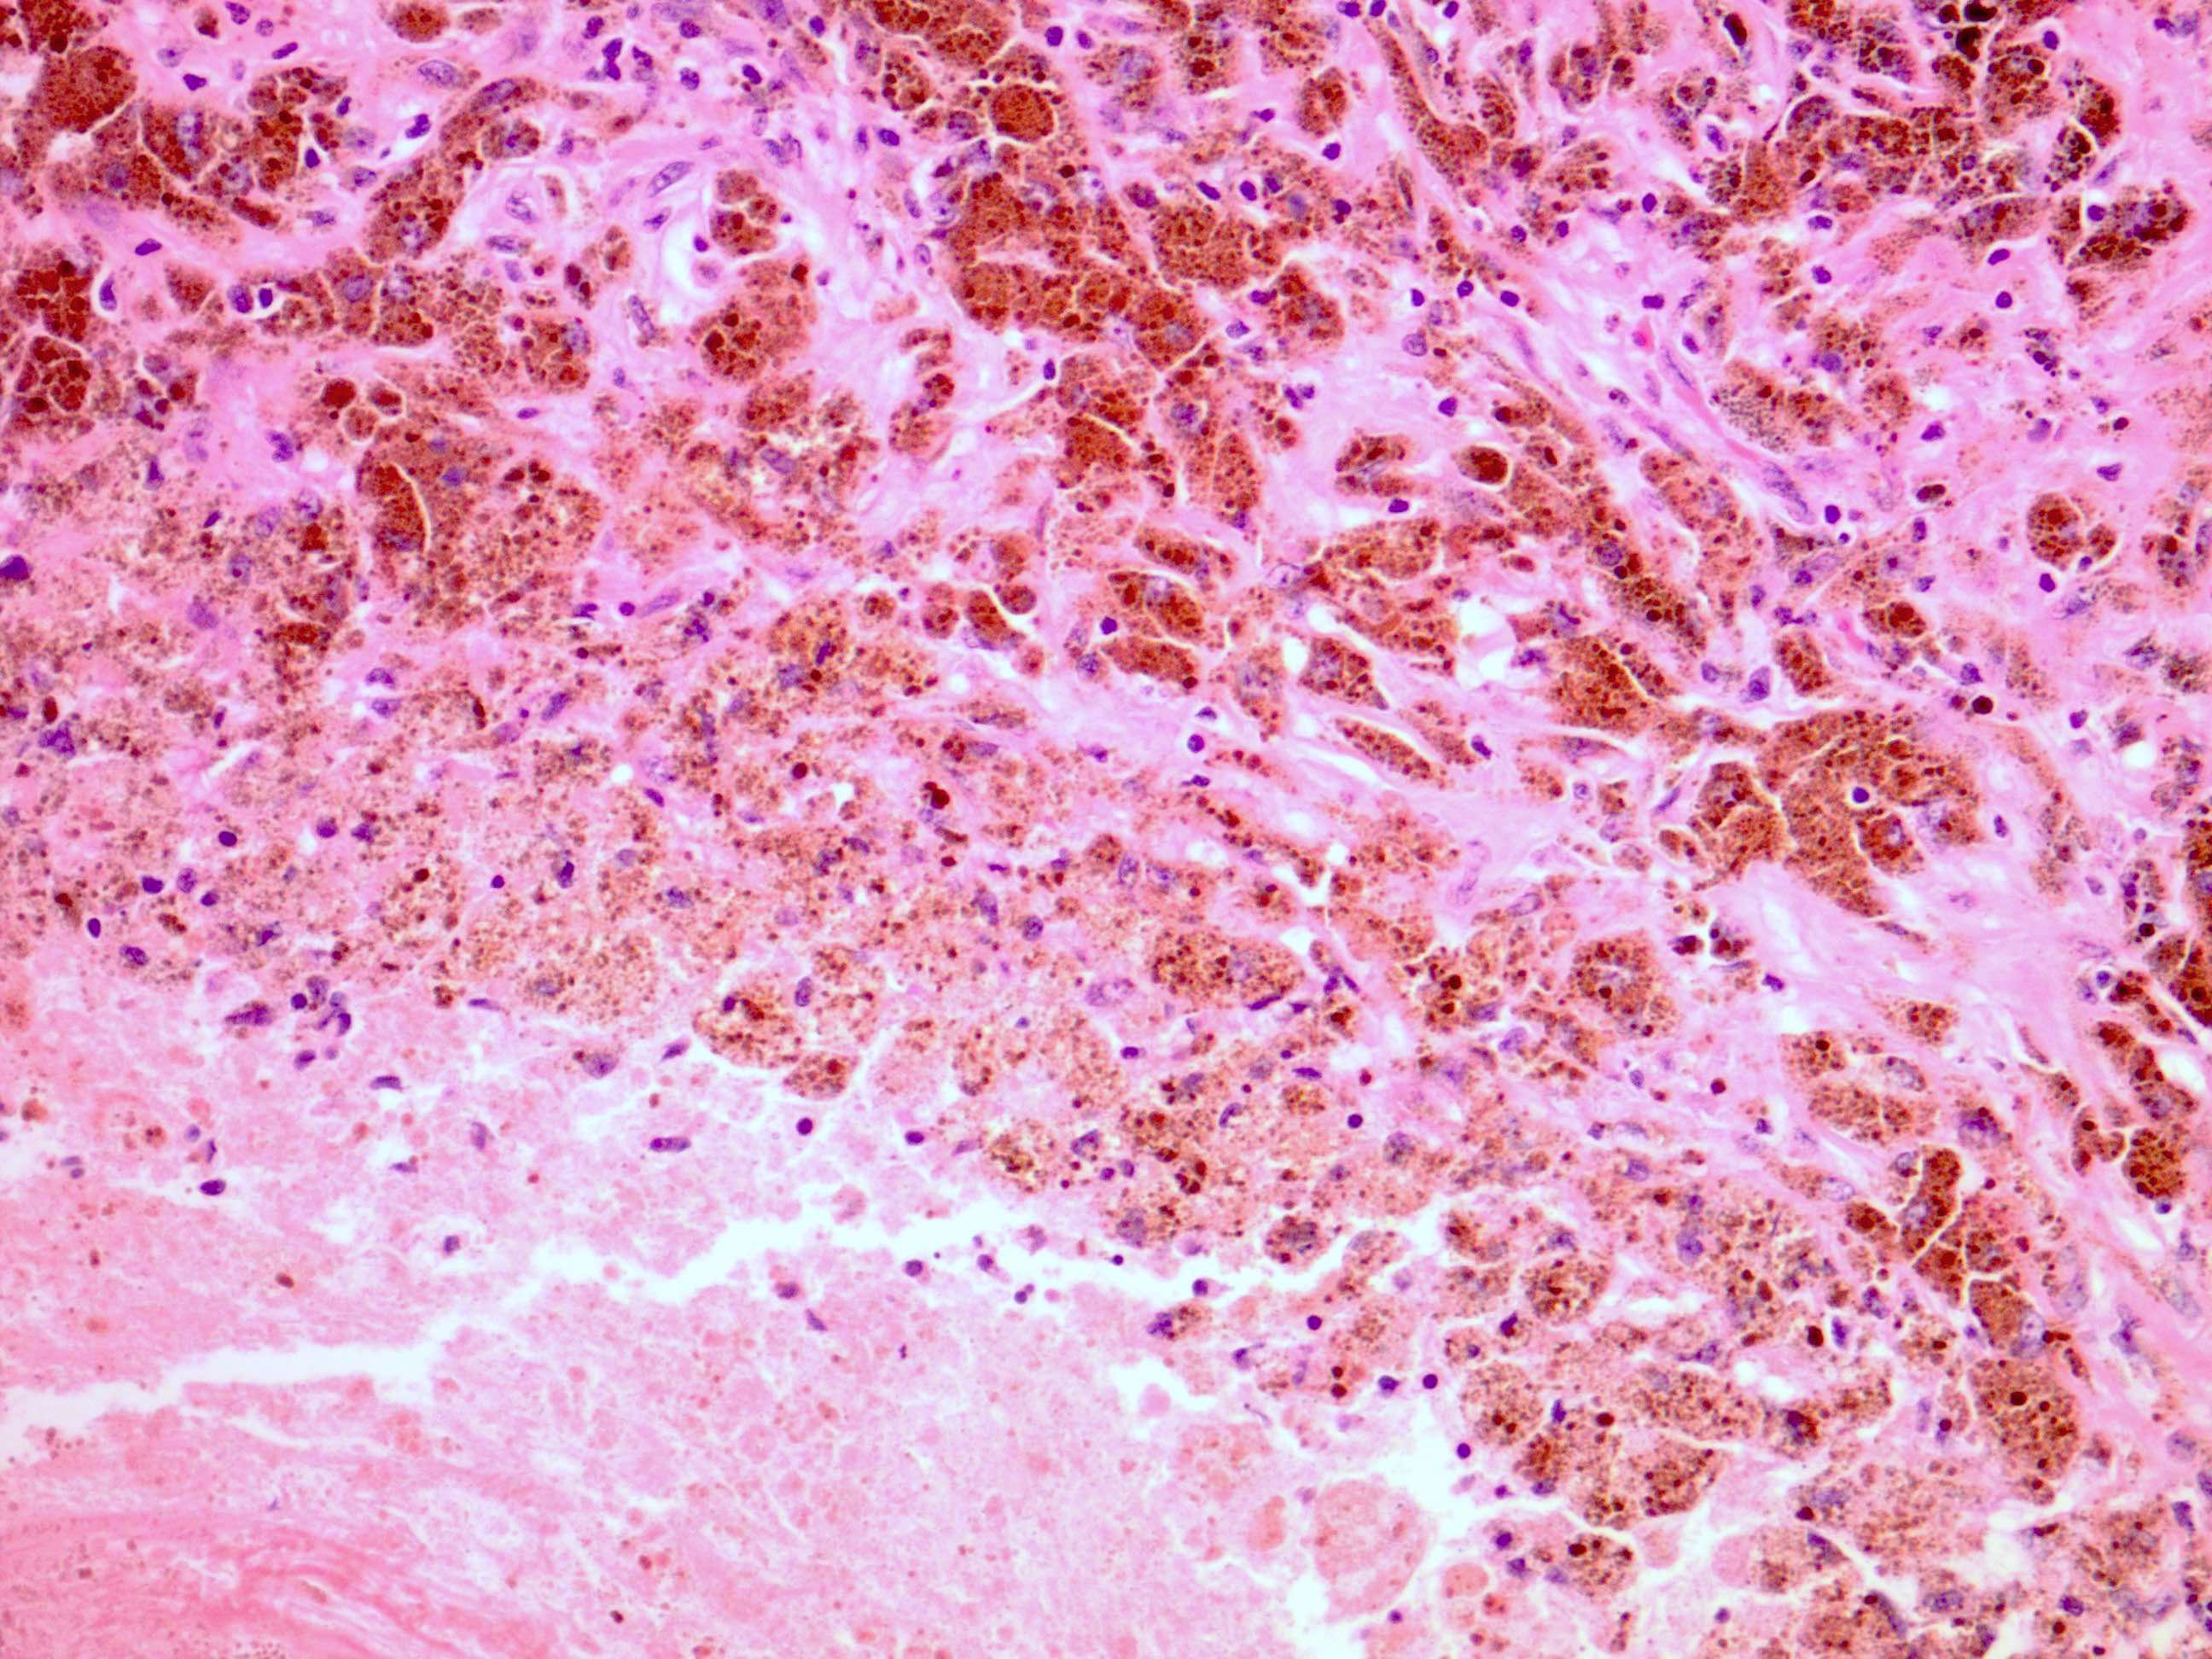 Tumor melanosis with necrosis